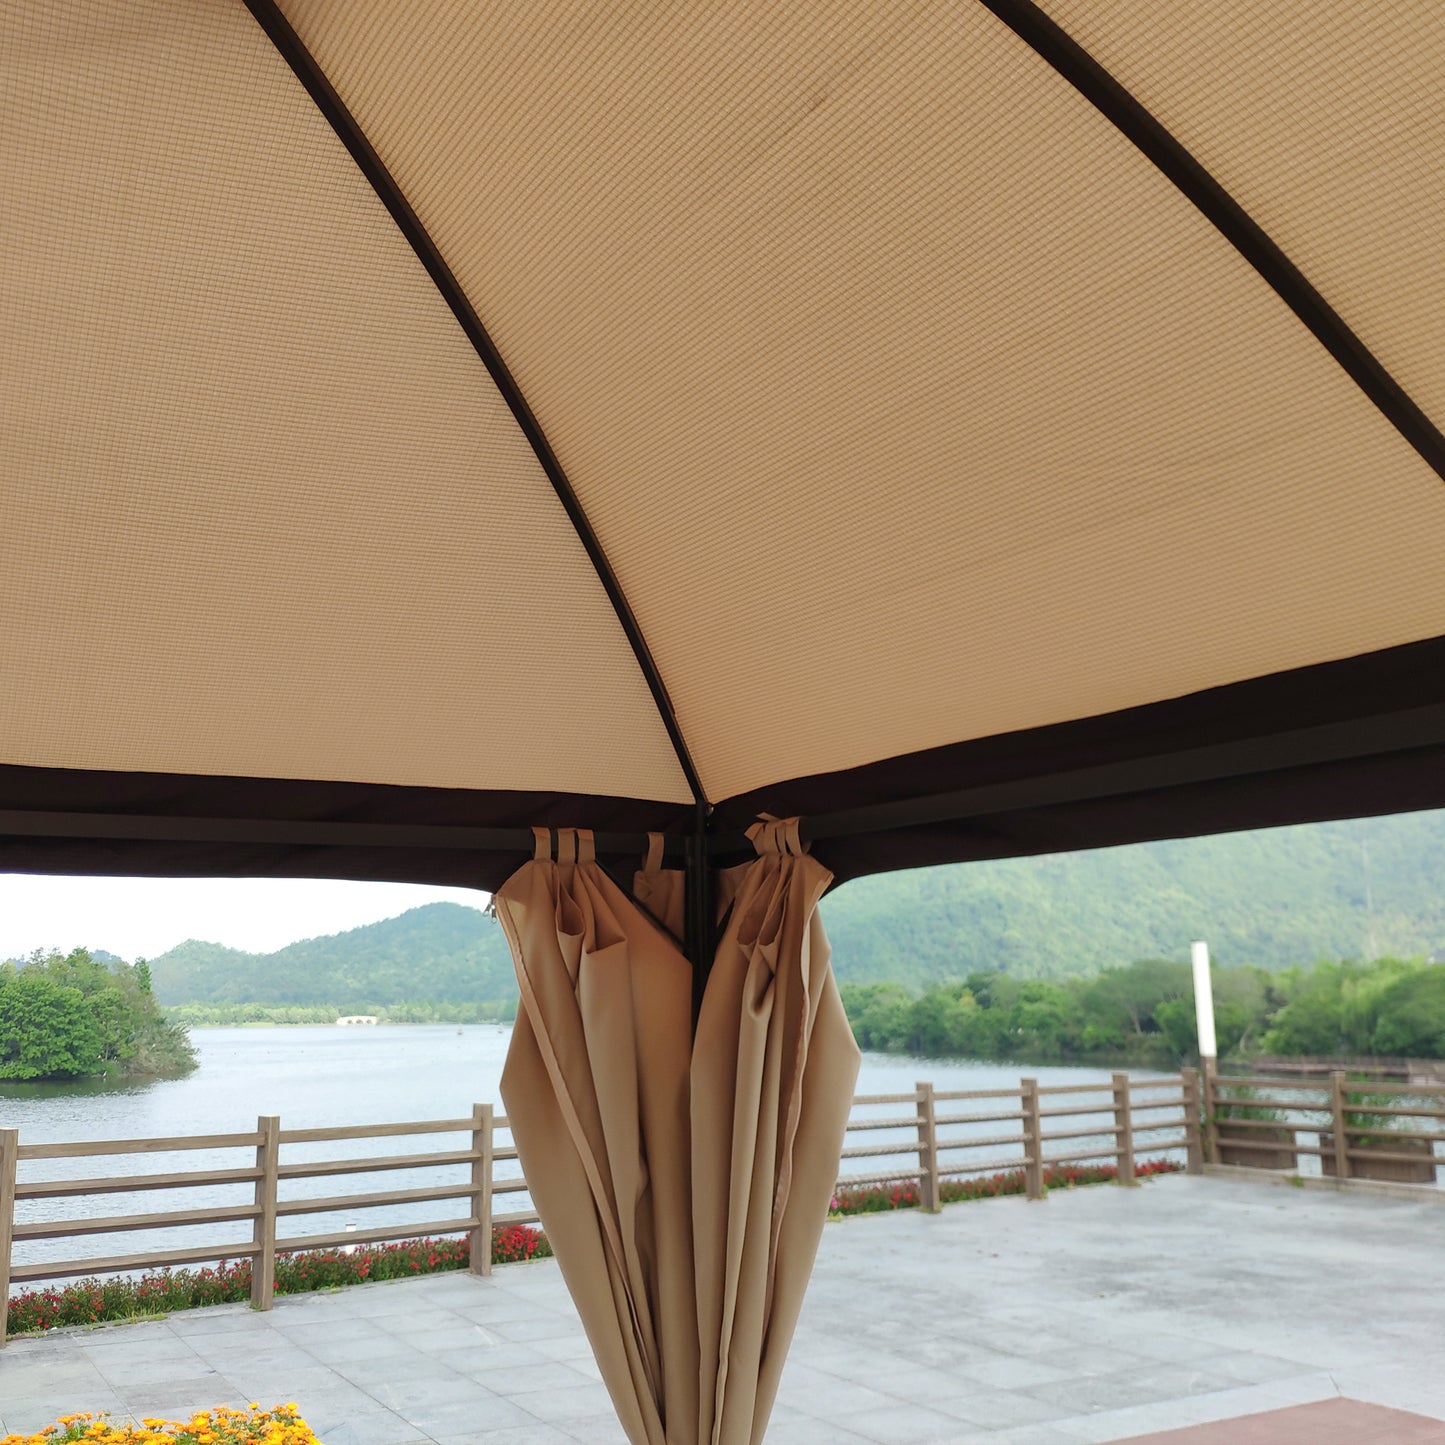 Stacy 10 x 10 ft Outdoor Patio Gazebo Canopy Tent - Khaki